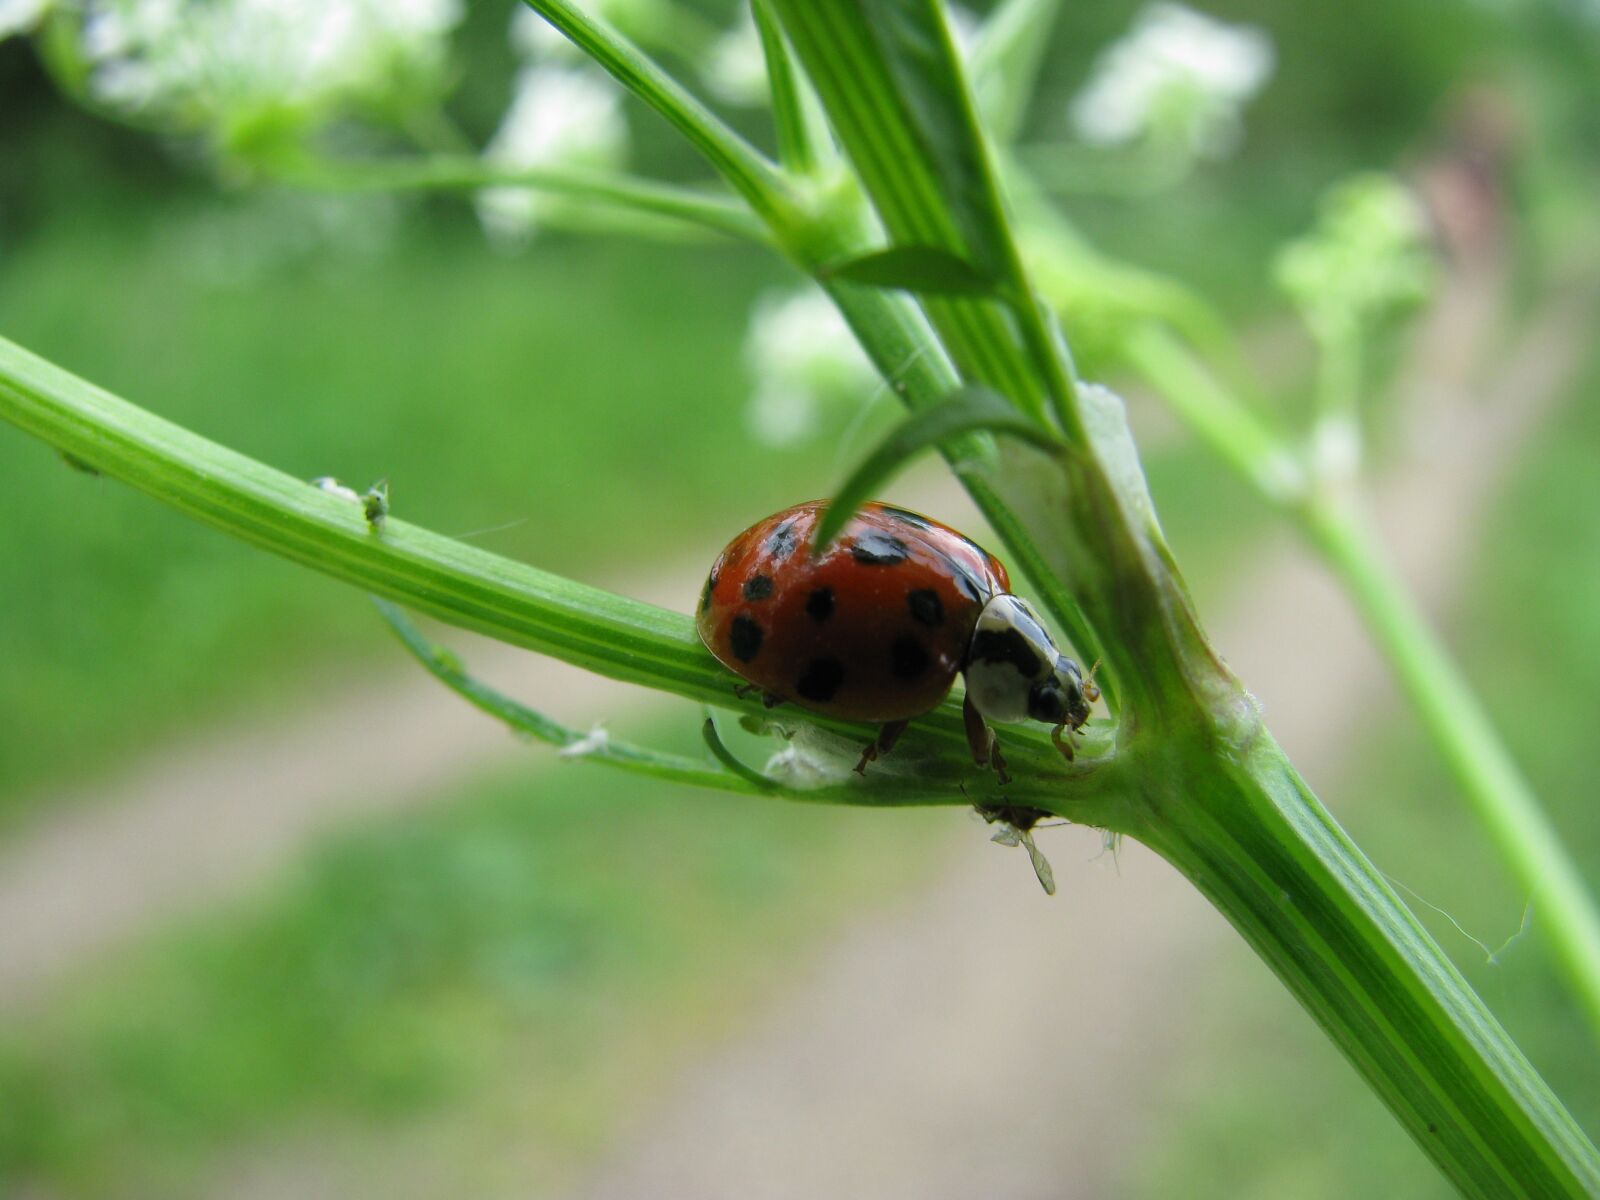 Canon POWERSHOT SX100 IS sample photo. Ladybug, nature, bug photography